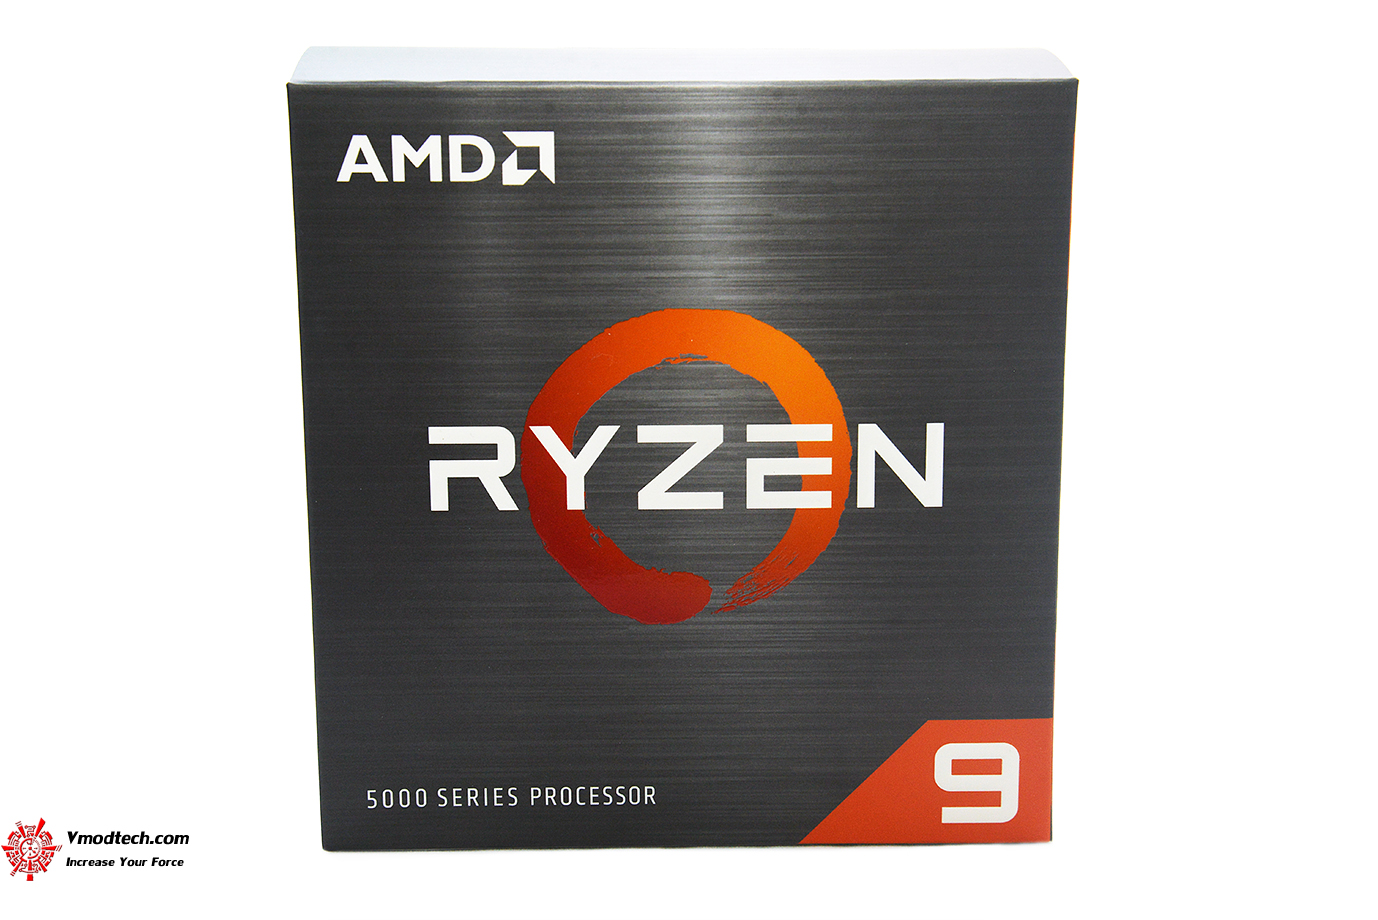 dsc 9886 AMD RYZEN 9 5950X PROCESSOR REVIEW